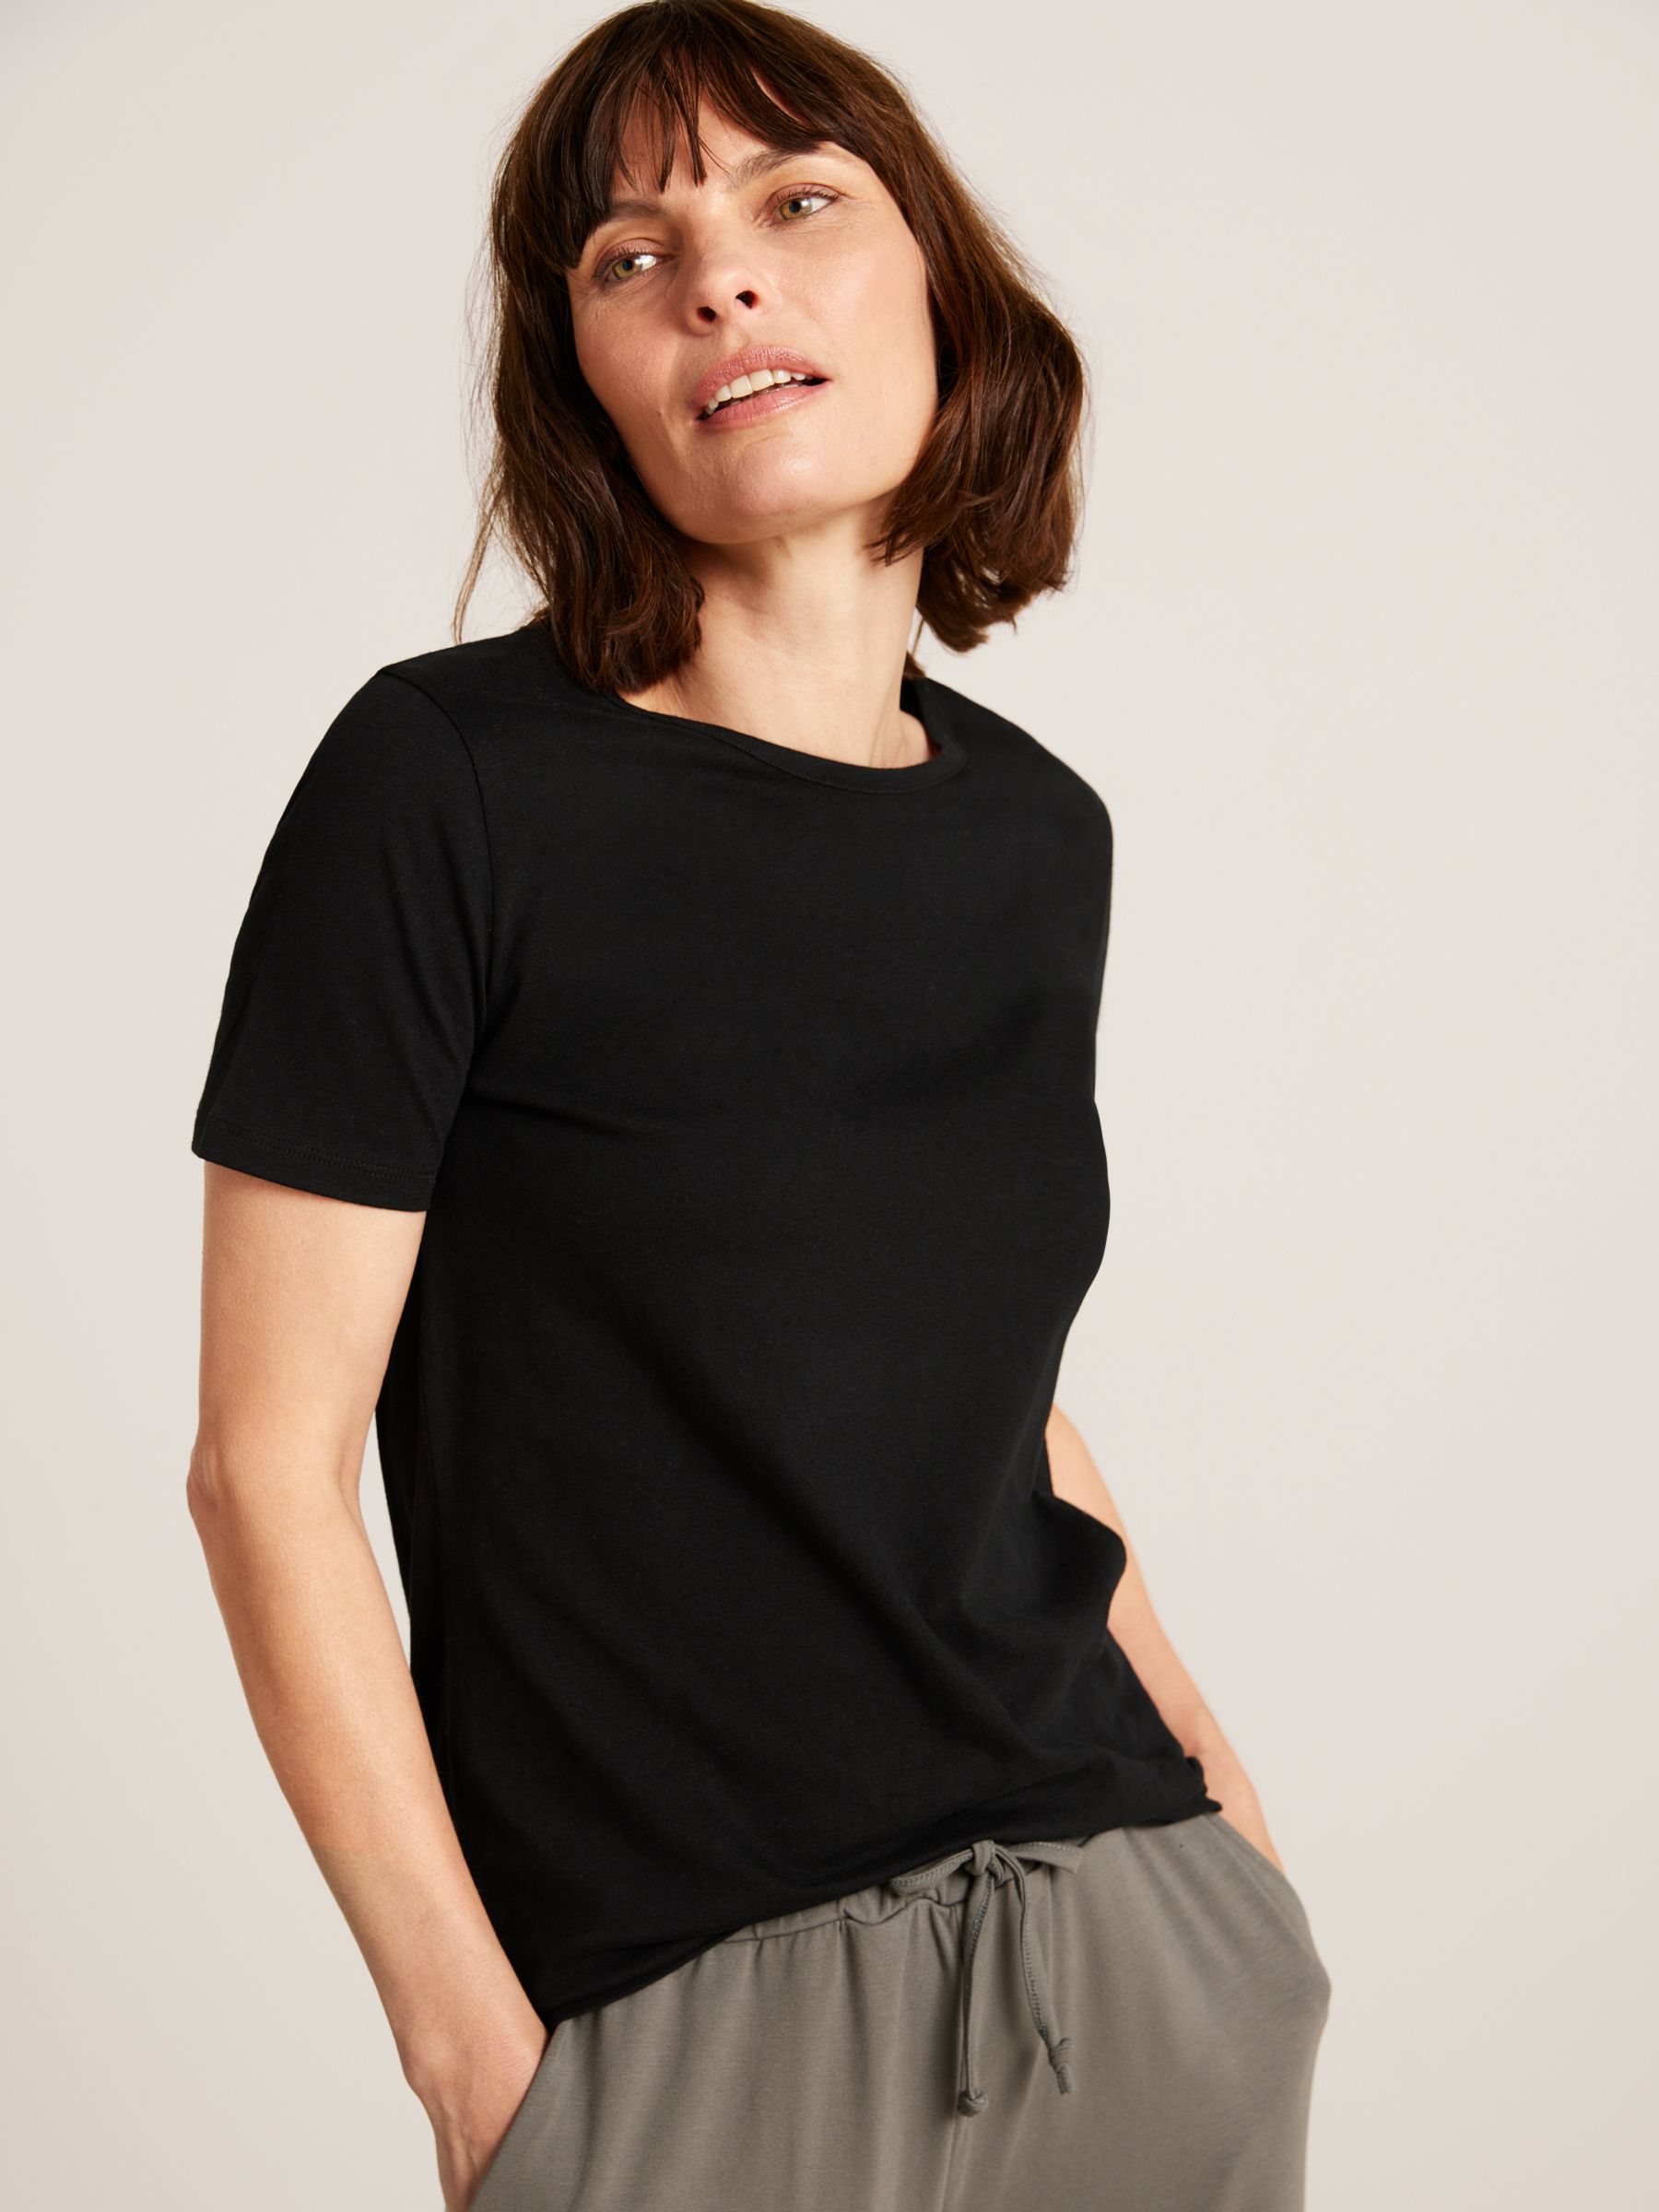 Black M discount 68% NoName T-shirt WOMEN FASHION Shirts & T-shirts Combined 